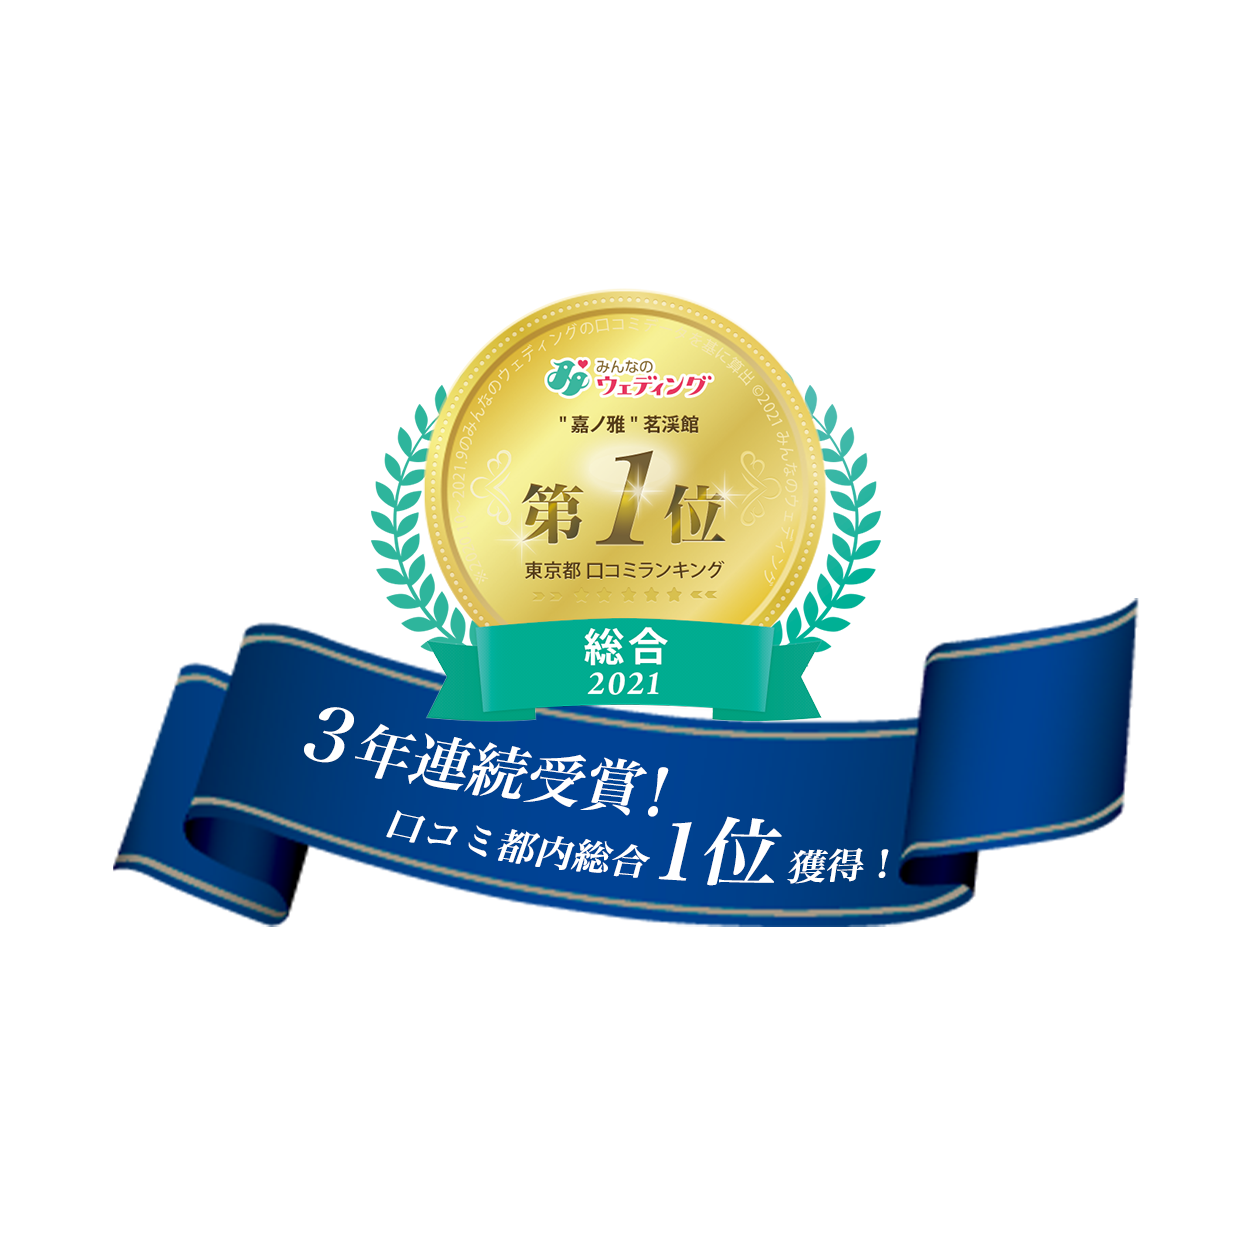 みんなのウェディング 嘉ノ雅茗渓館 第1位 東京都口コミランキング 総合2021 口コミ都内1位獲得！